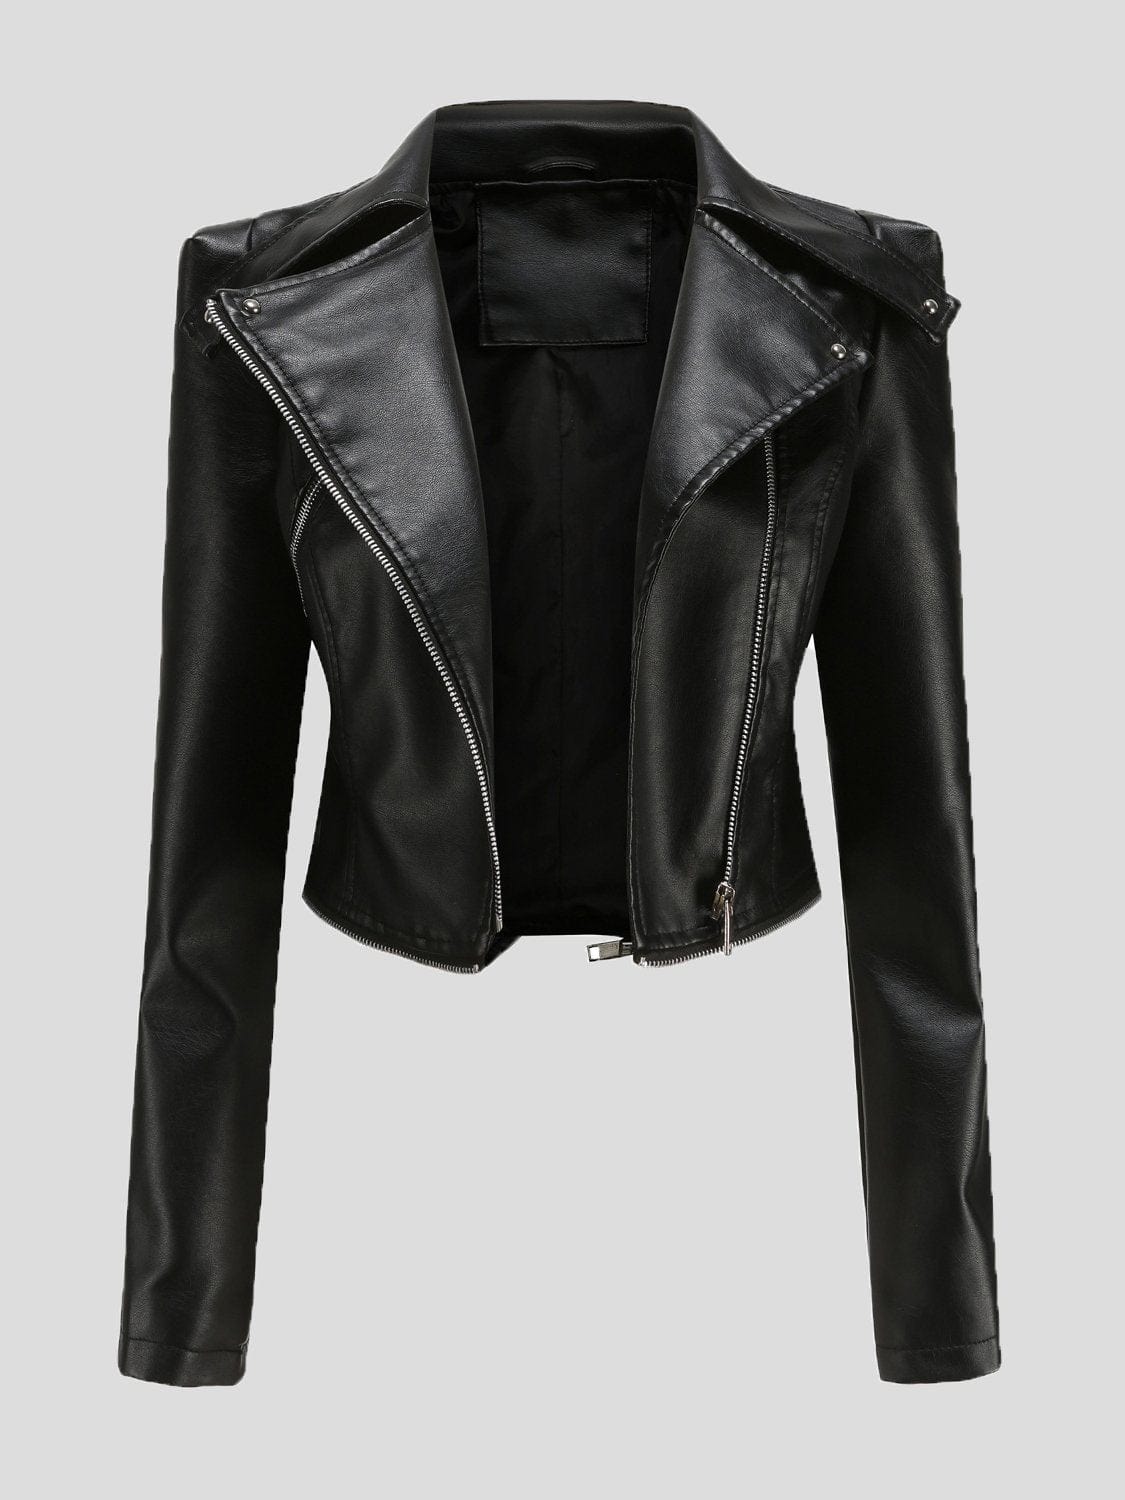 MsDressly Jackets Detachable Hem Long Sleeve Fashion Leather Jacket